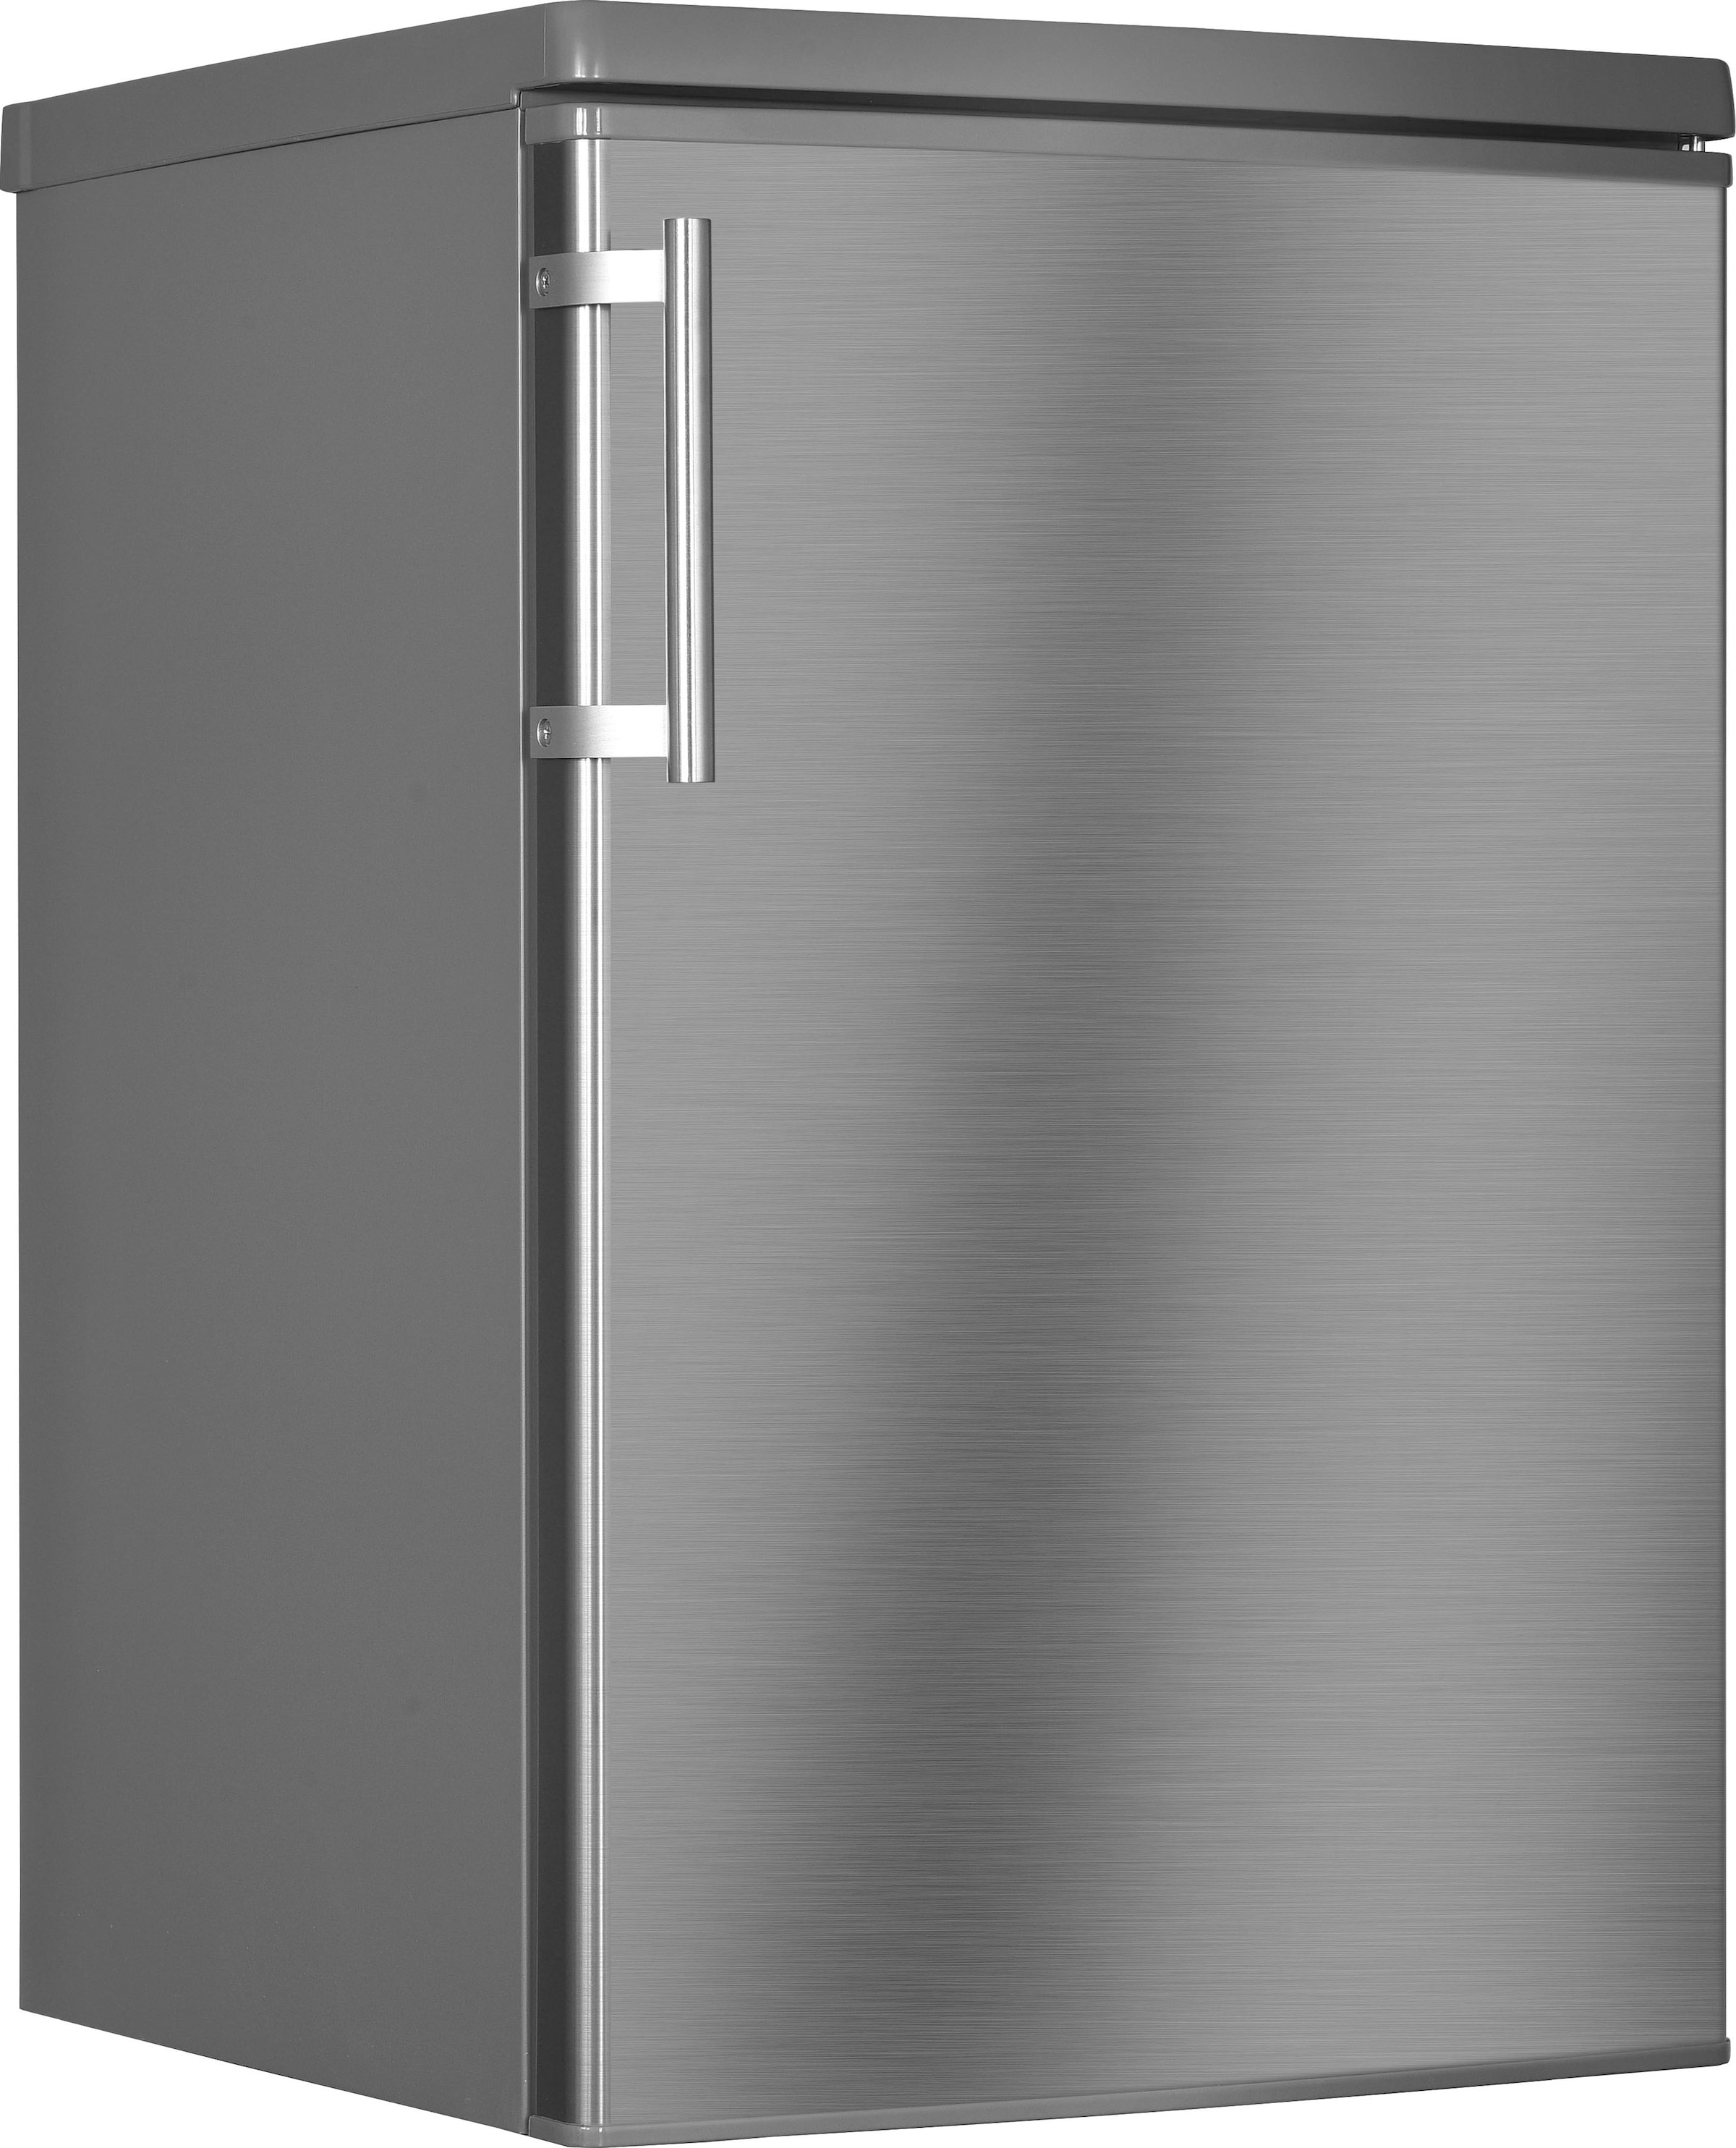 Kühlschrank »HKS8555GD«, HKS8555GDI-2, 85 cm hoch, 55 cm breit, Schnellgefrierfunktion